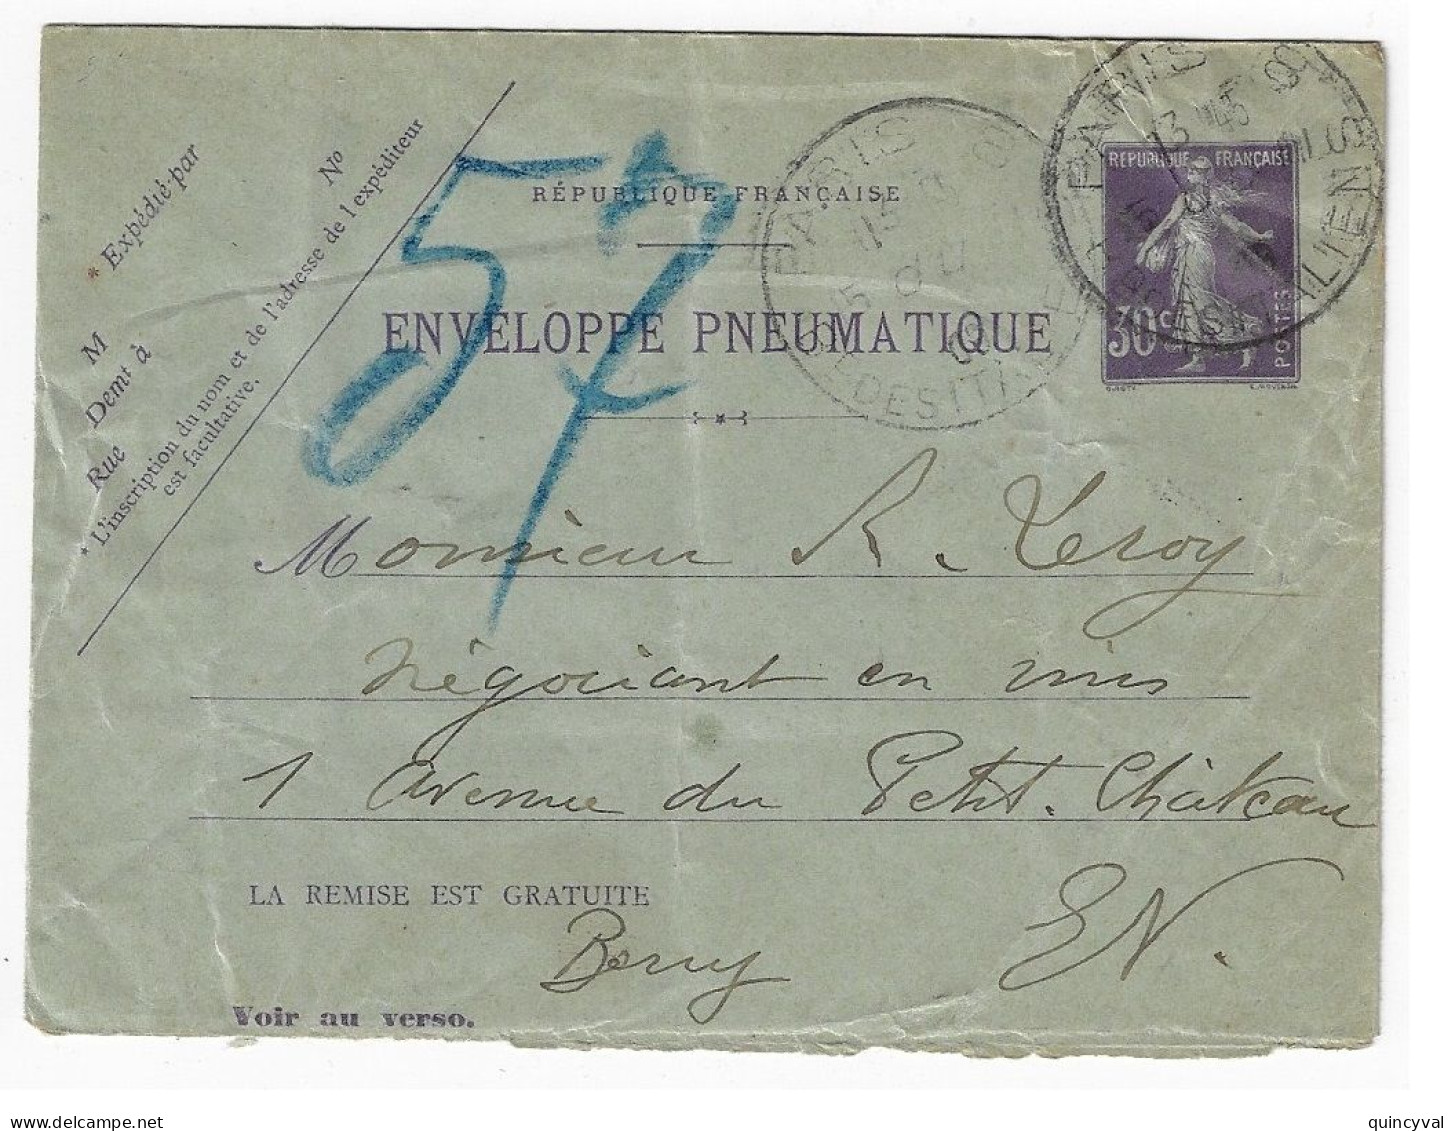 PARIS 8 Italiens Pneumatique Enveloppe Entier 30c Semeuse Violet Yv EPP2 Storch K2 Verso 16 Lignes 20 Villes Ob 11 1909 - Pneumatici